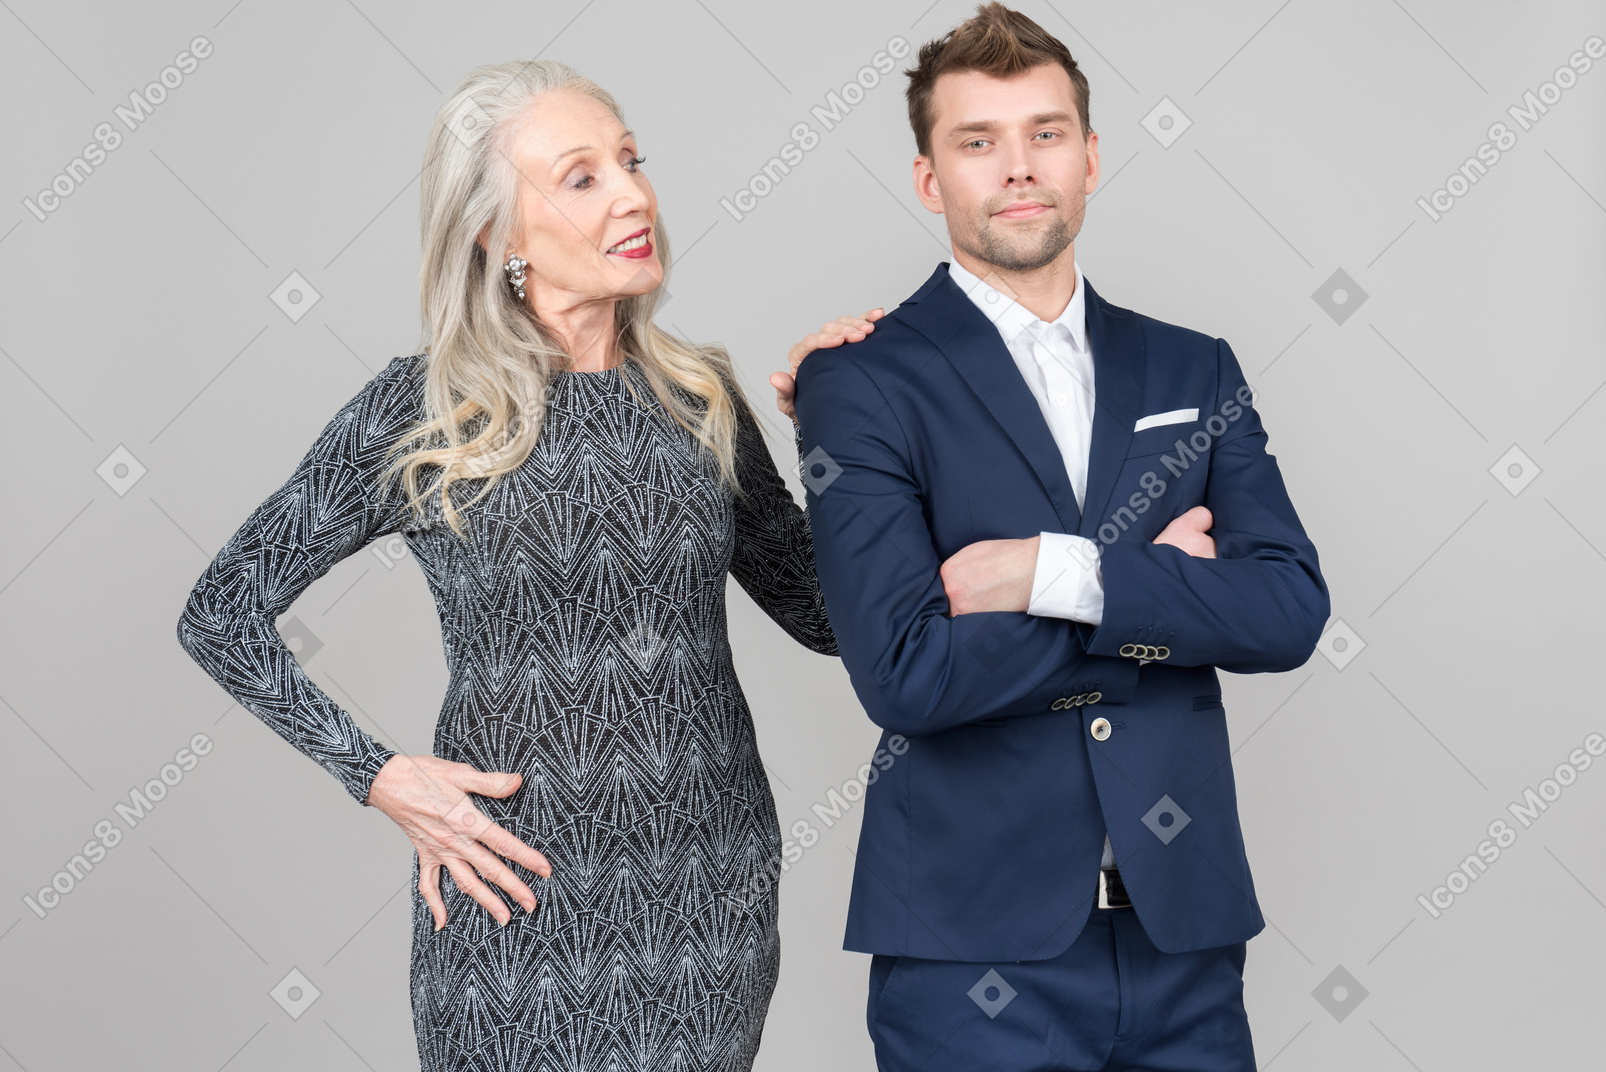 늙은 여자는 그녀의 젊은 남자 친구의 등에 손을 기대어